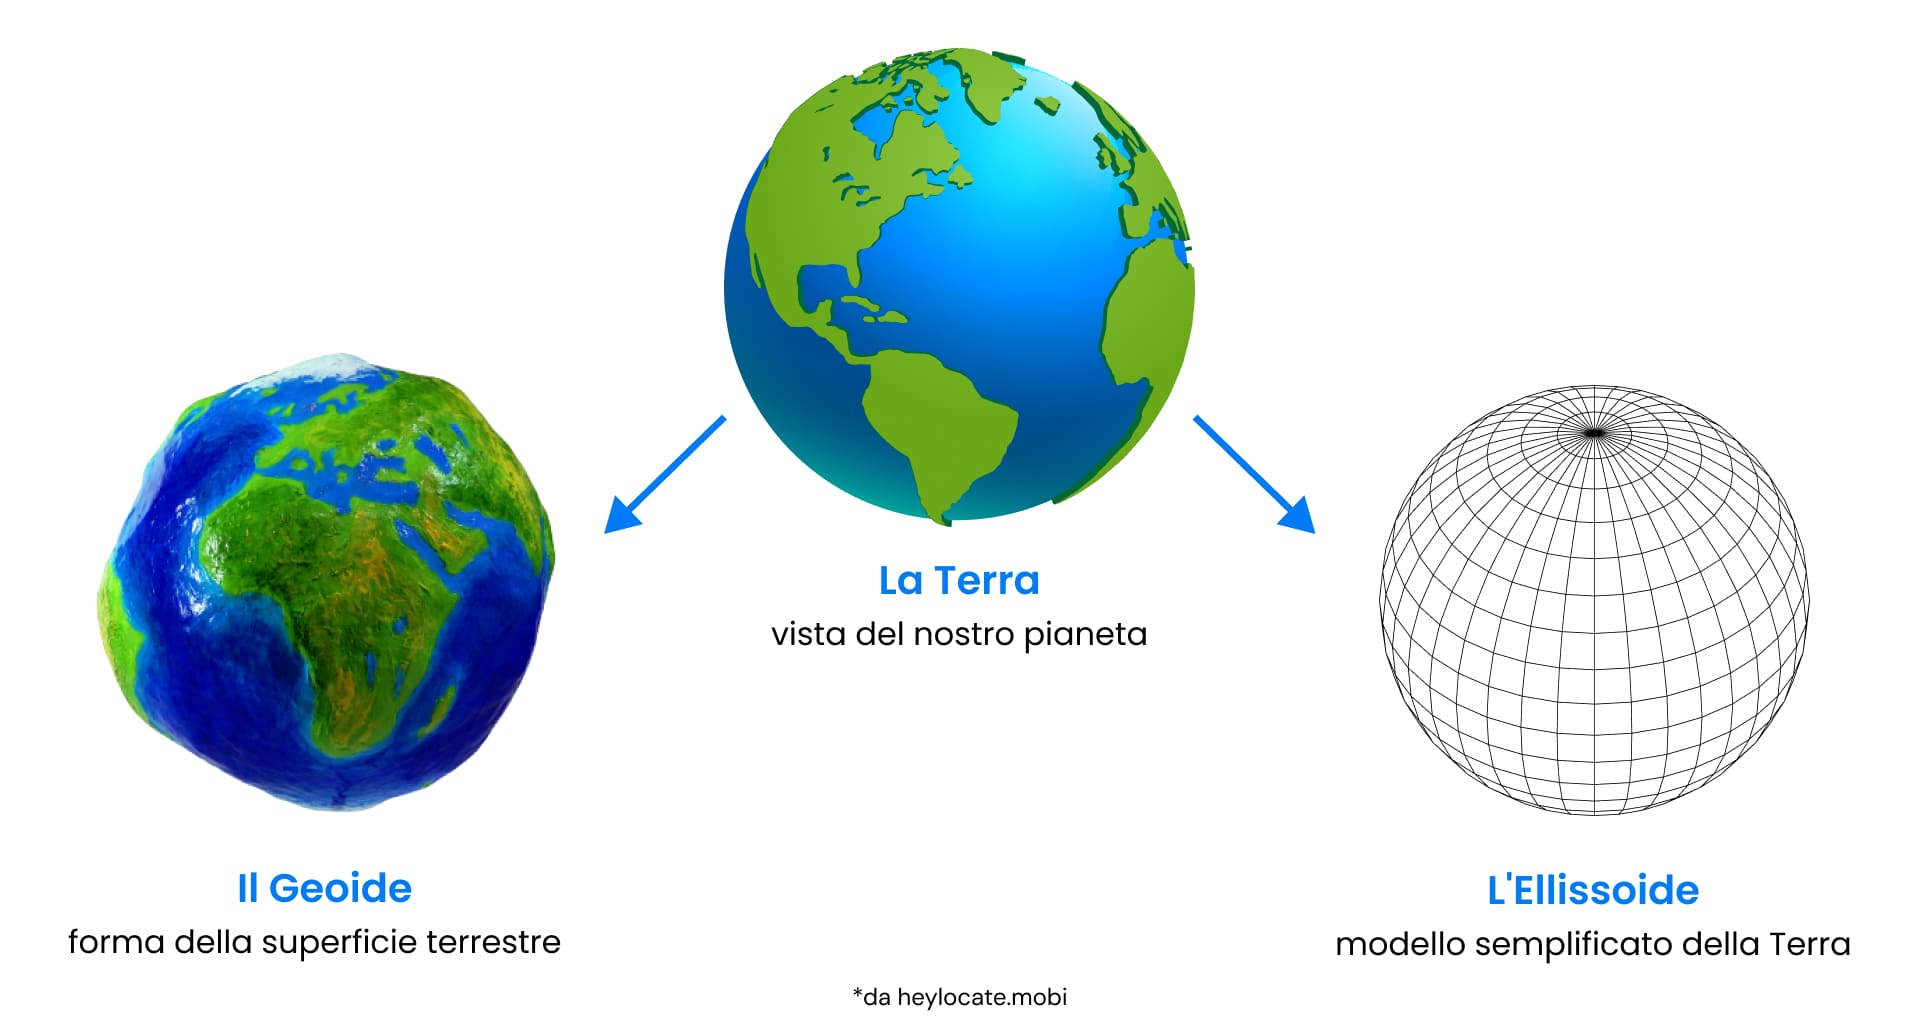 Una serie di immagini che mettono a confronto il geoide, la forma reale della Terra, e l'ellissoide, un modello semplificato della Terra usato per le mappe.